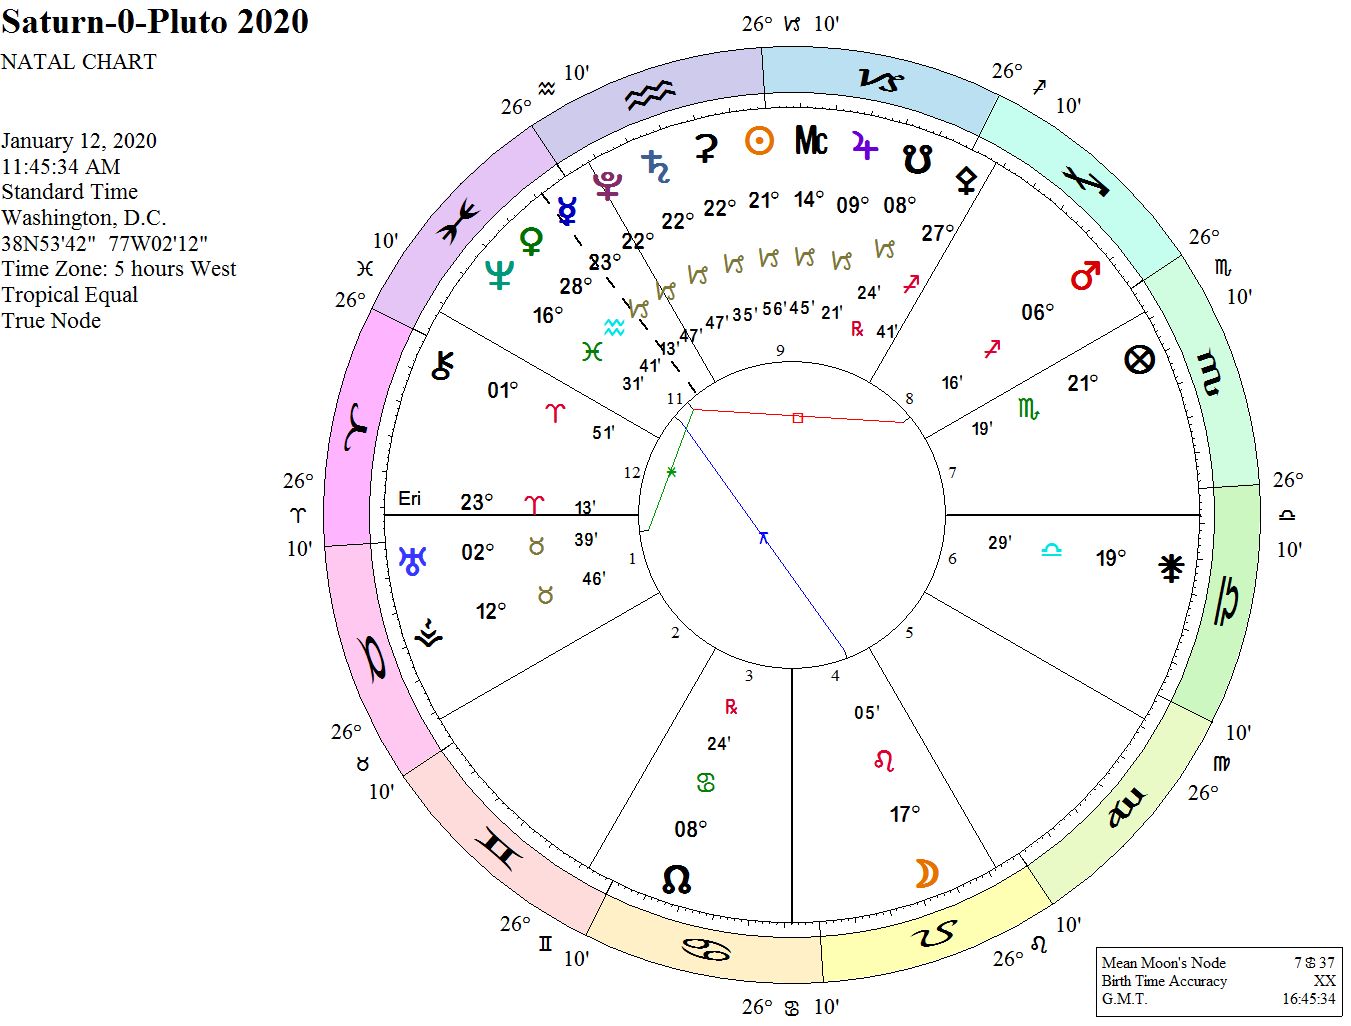 Elizabeth Warren Astrology Chart